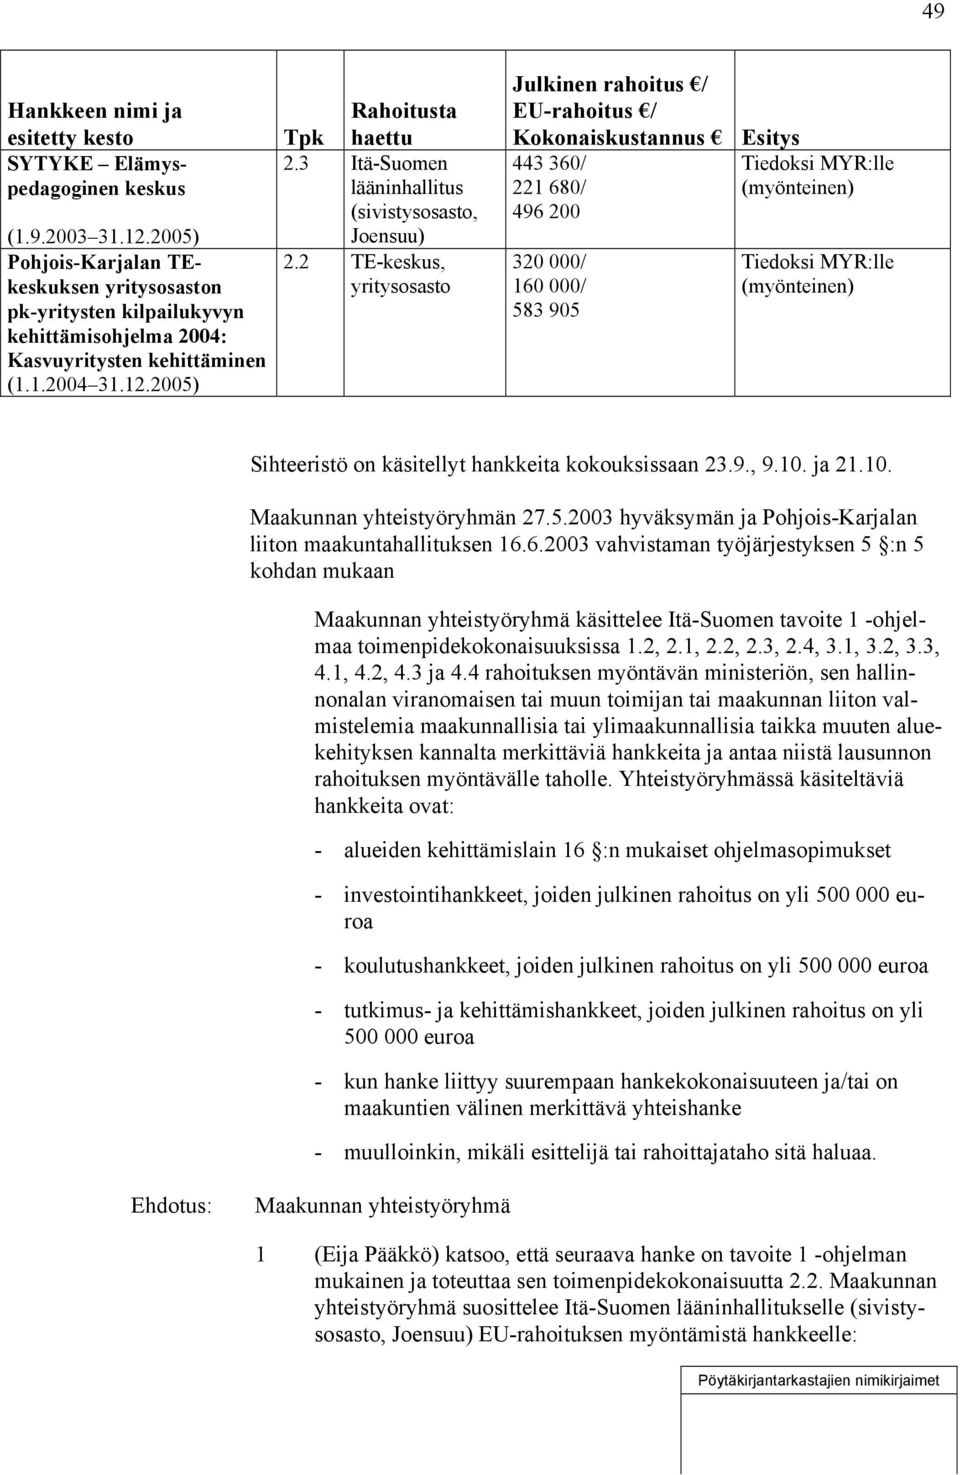 3 Itä-Suomen lääninhallitus (sivistysosasto, Joensuu) 2.